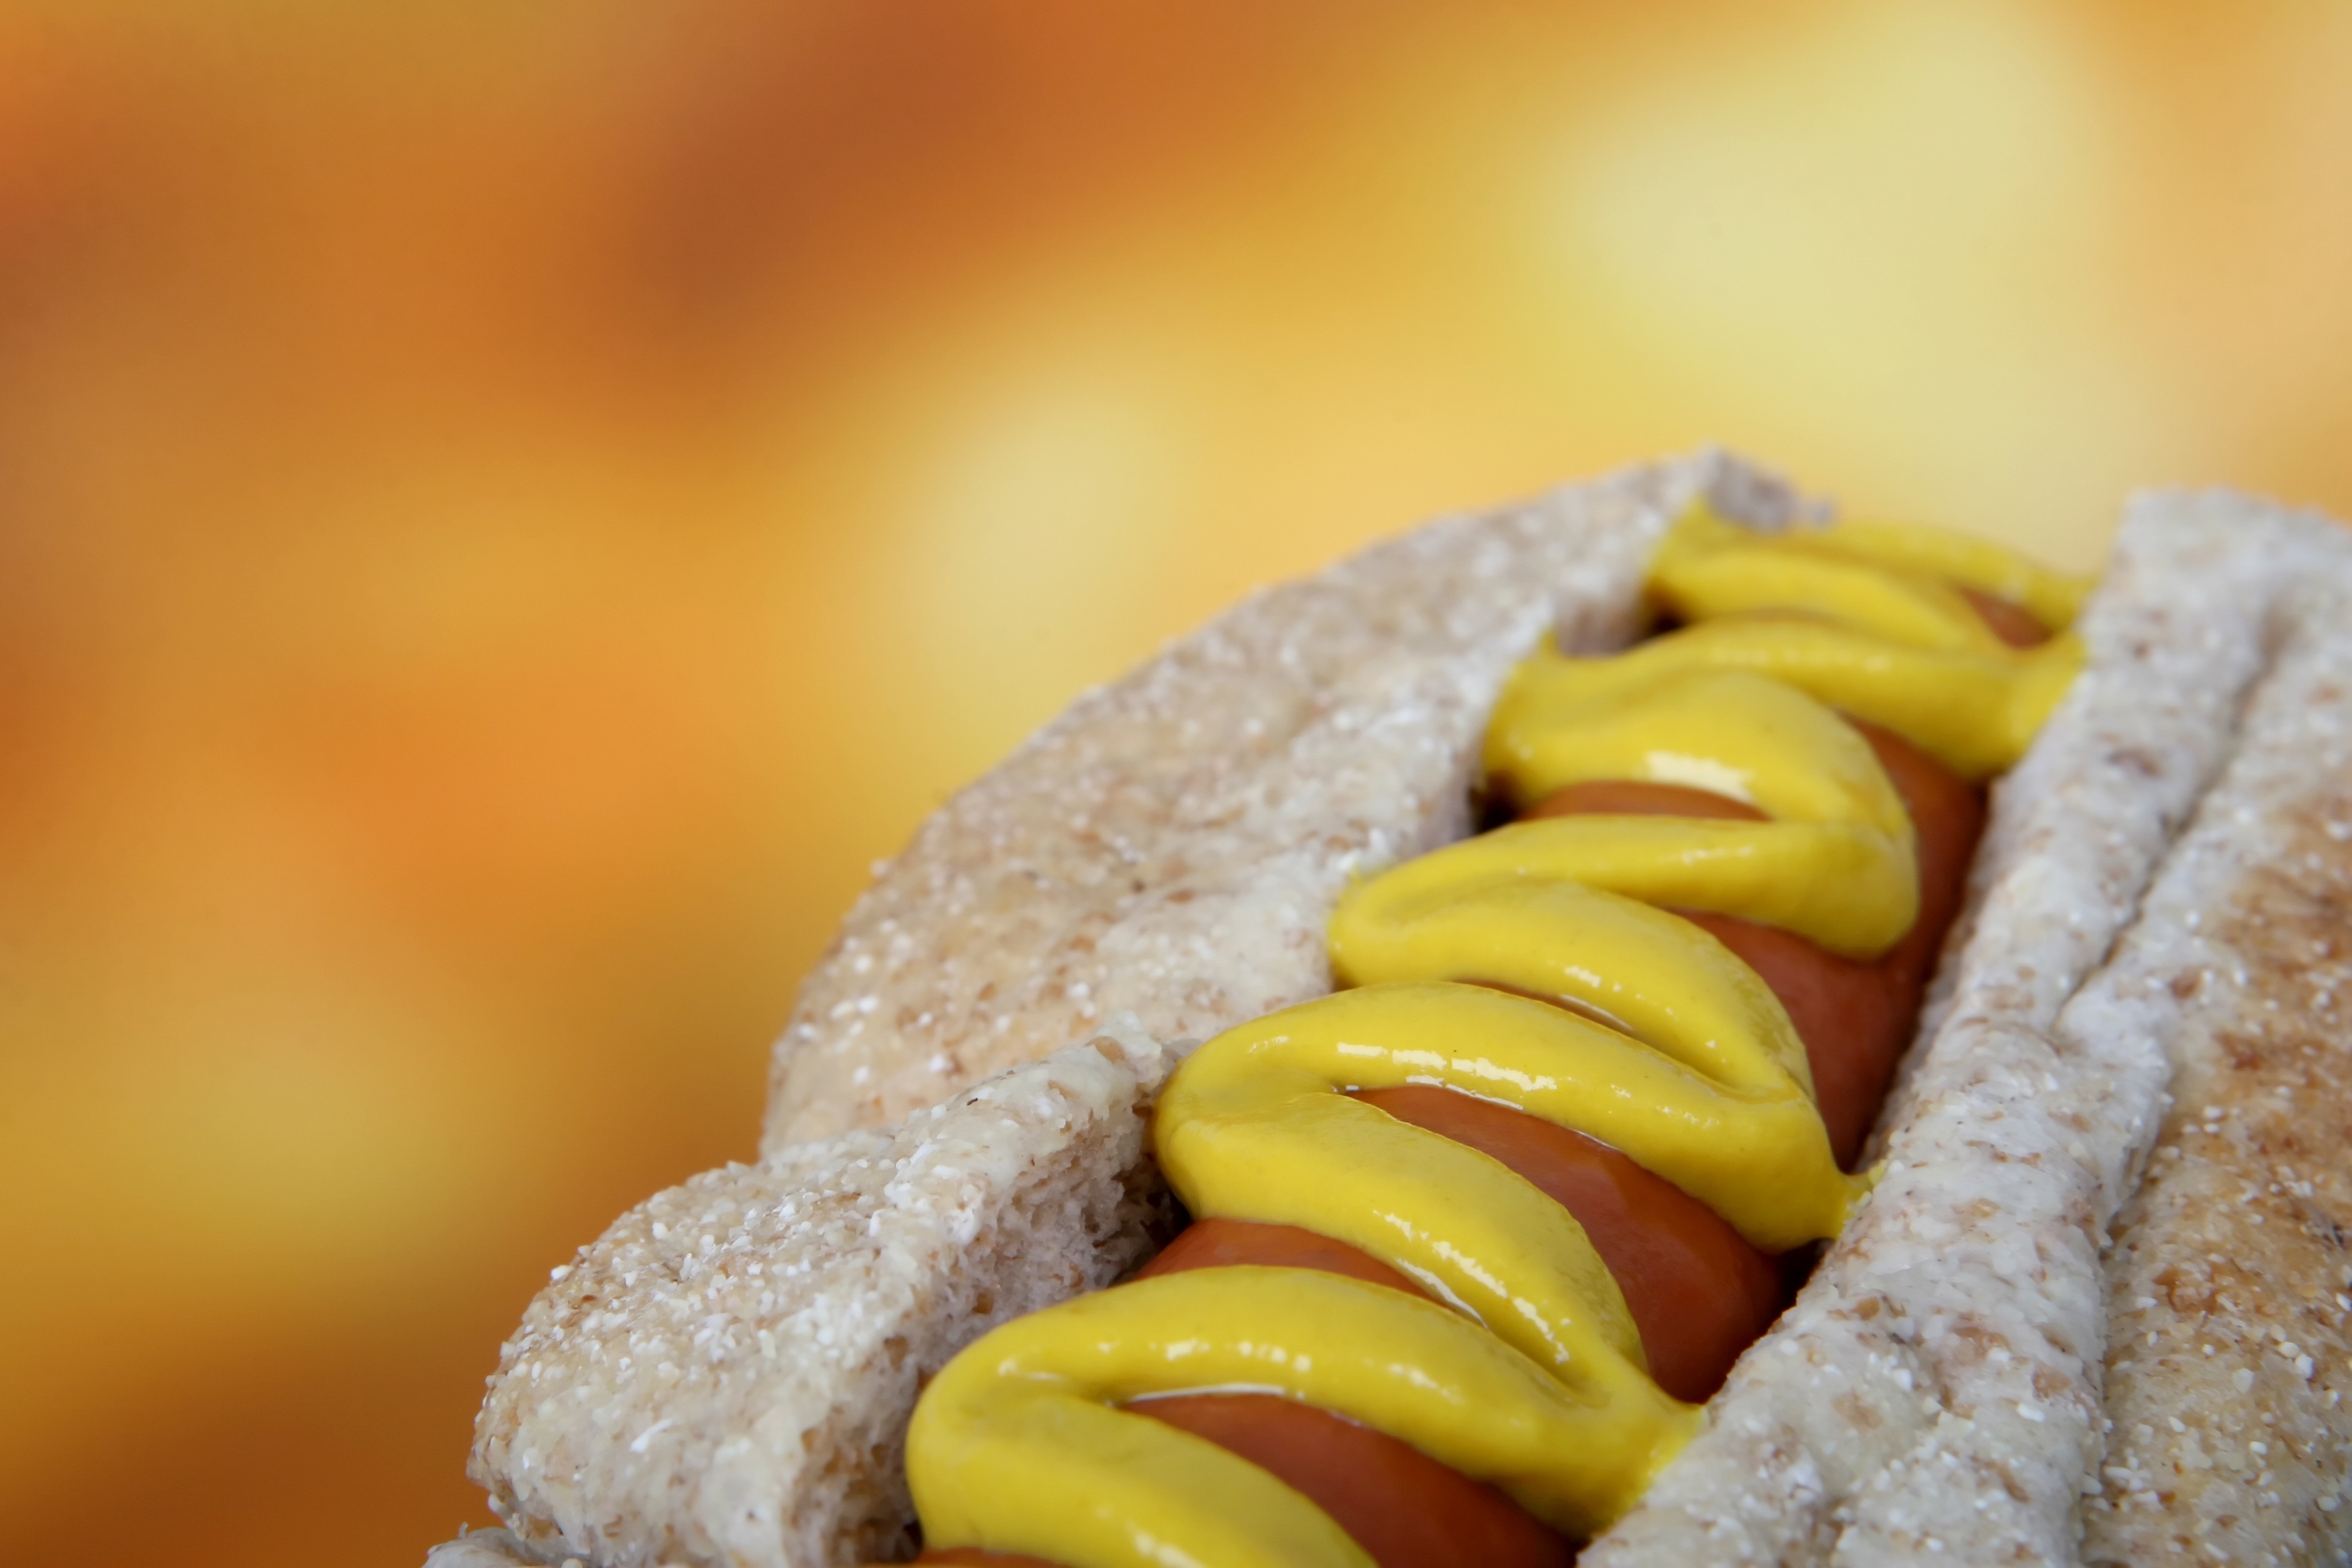 Hot dog photo